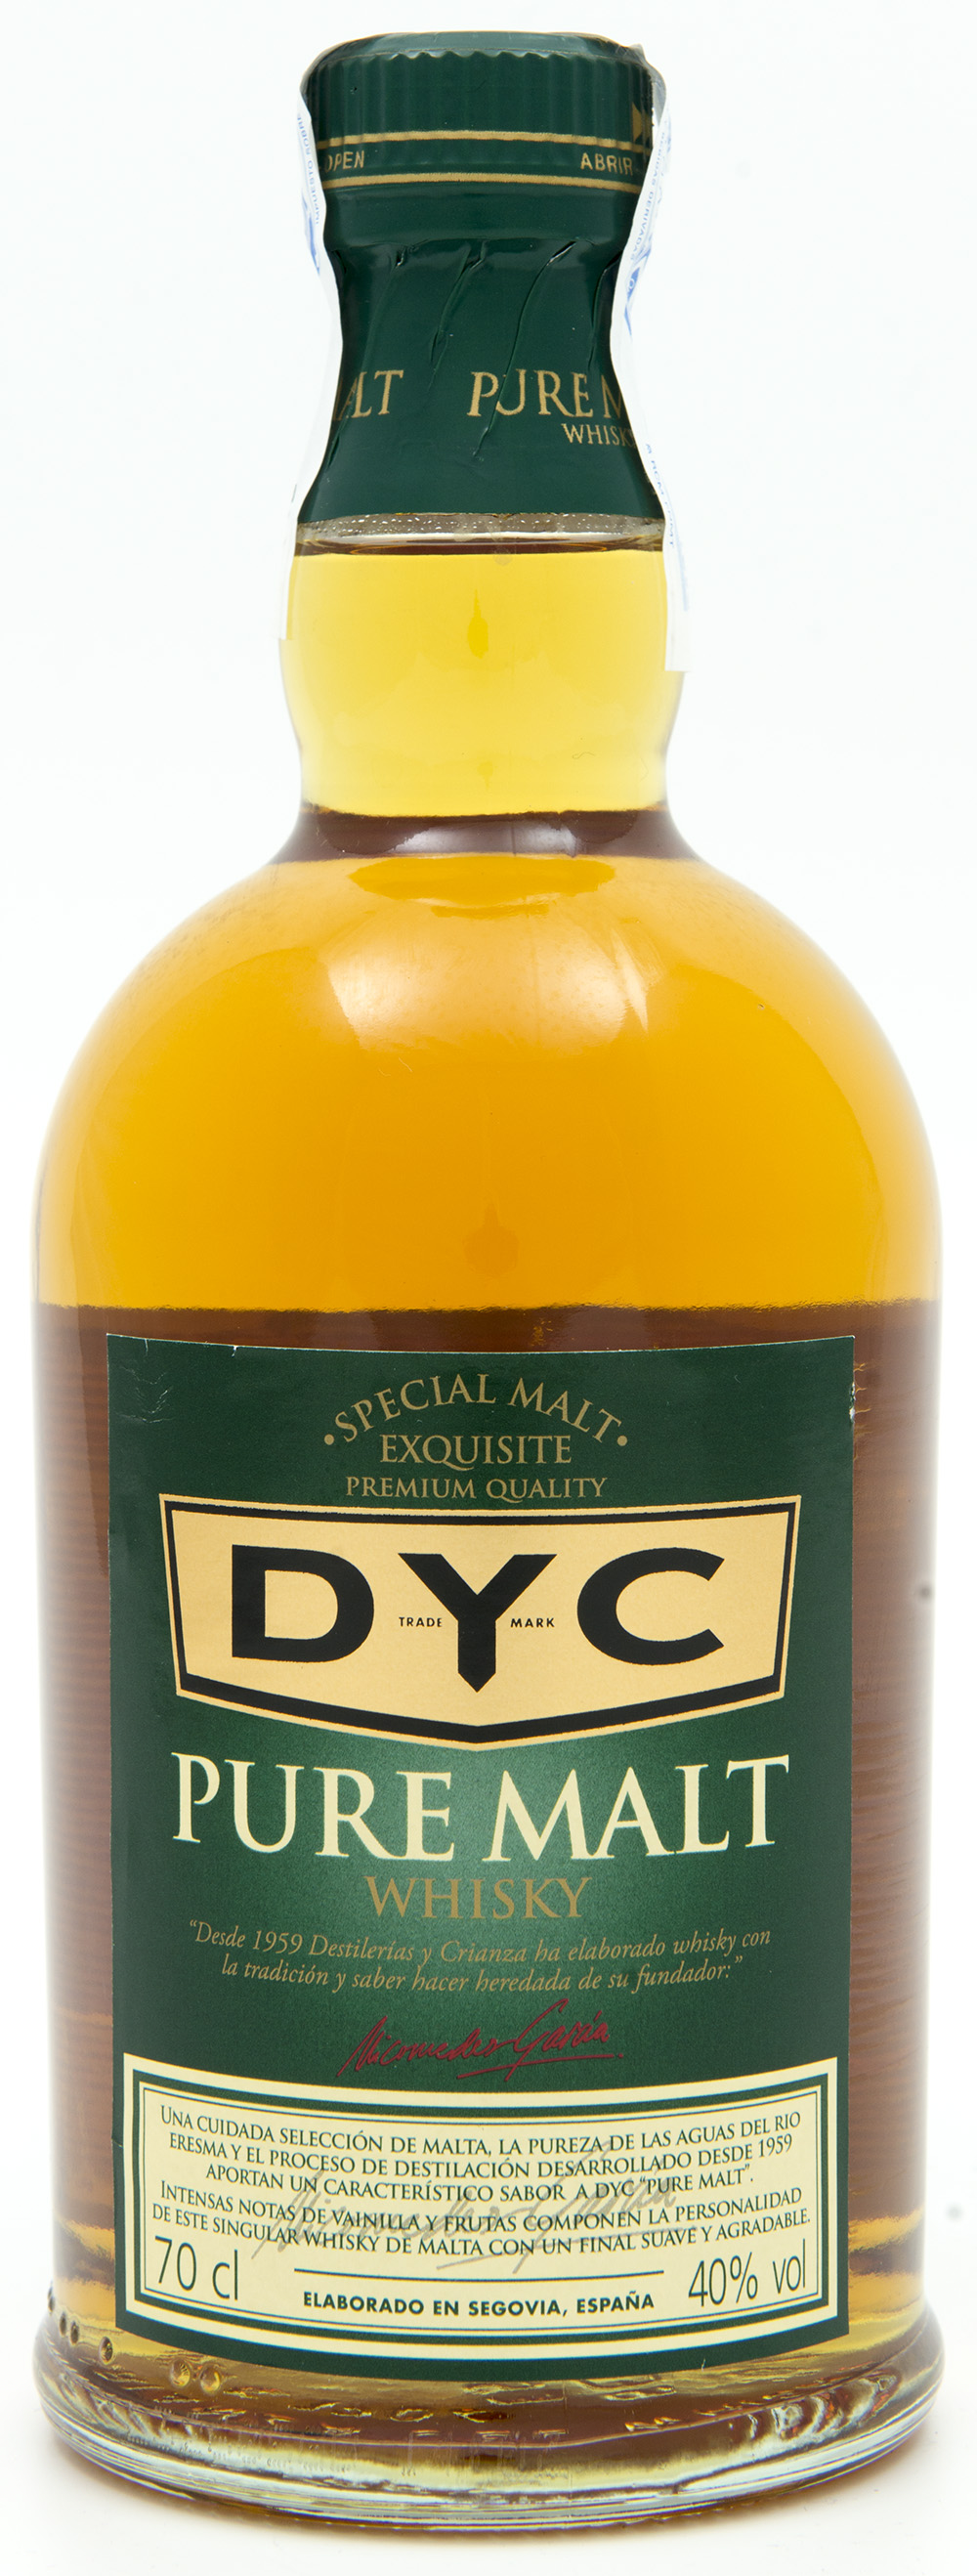 Billede: DSC_6193 - DYC Pure Malt - bottle front.jpg